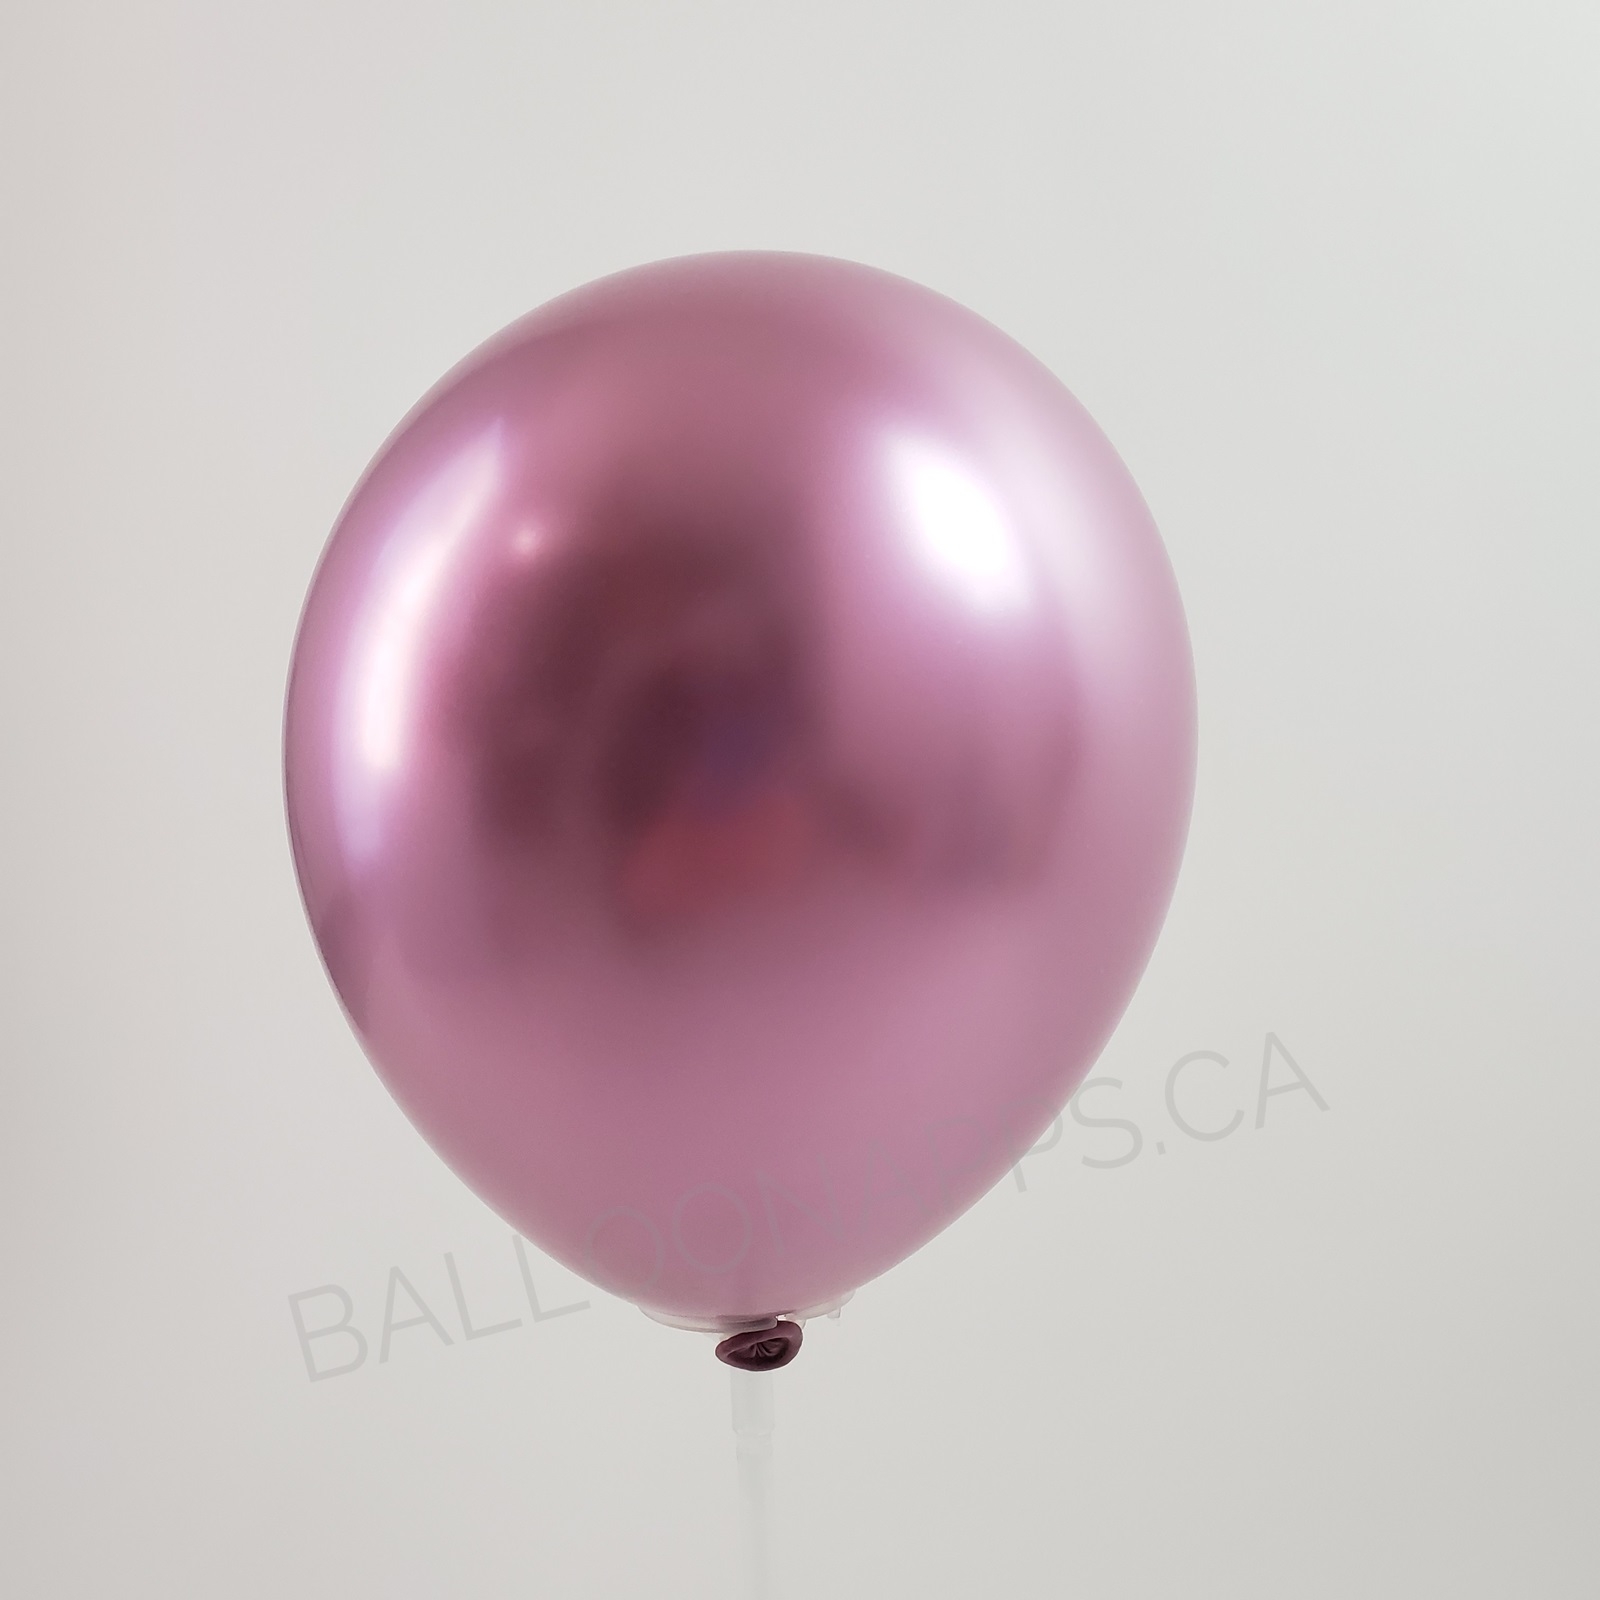 balloon texture BET (50) 260 Reflex Pink balloons